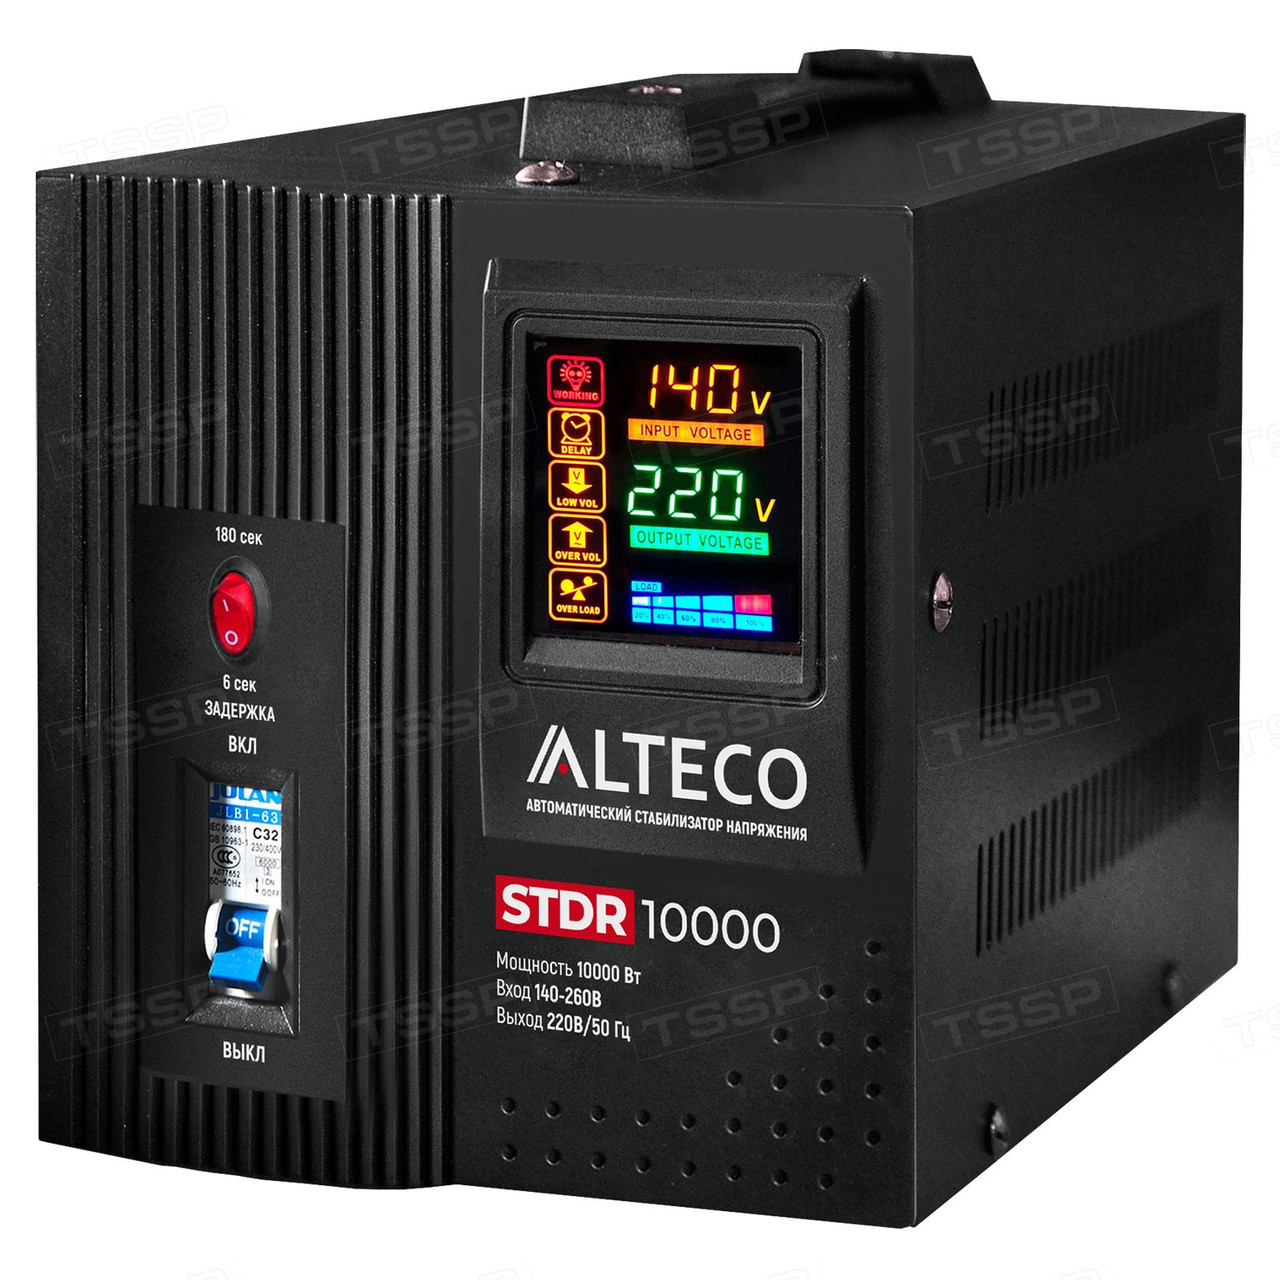 Автоматический cтабилизатор напряжения ALTECO STDR 10000